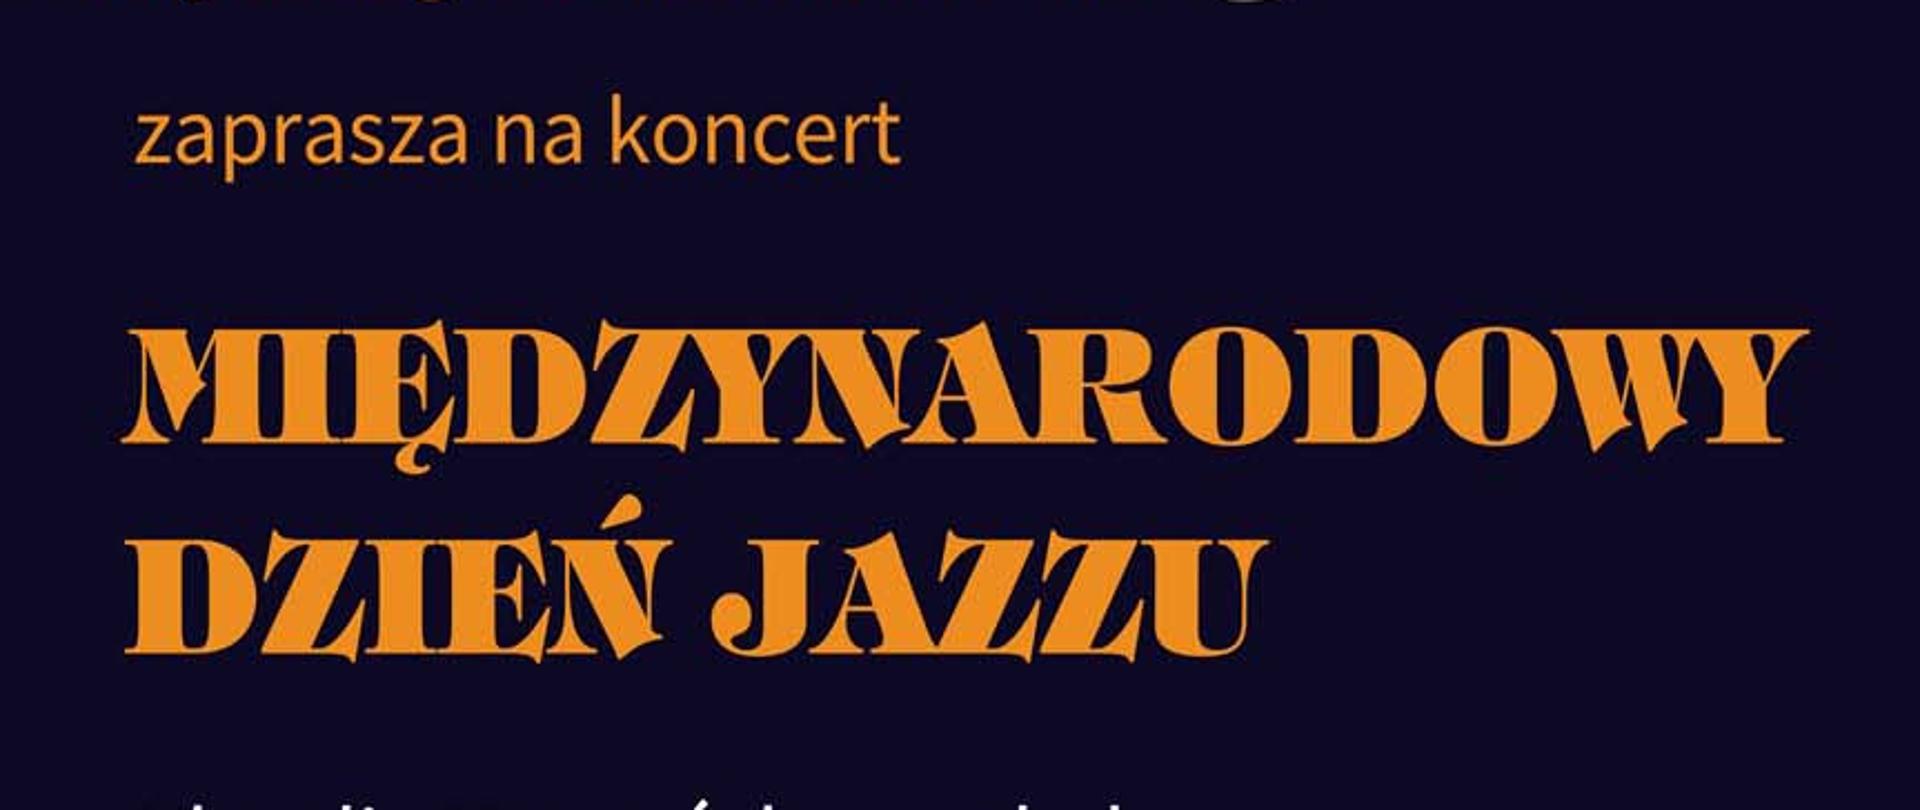 Międzynarodowy Dzień Jazzu 2023 plakat . Na granatowym tle informacja o wydarzeniu. Z lewej strony rysunek saksofonu.